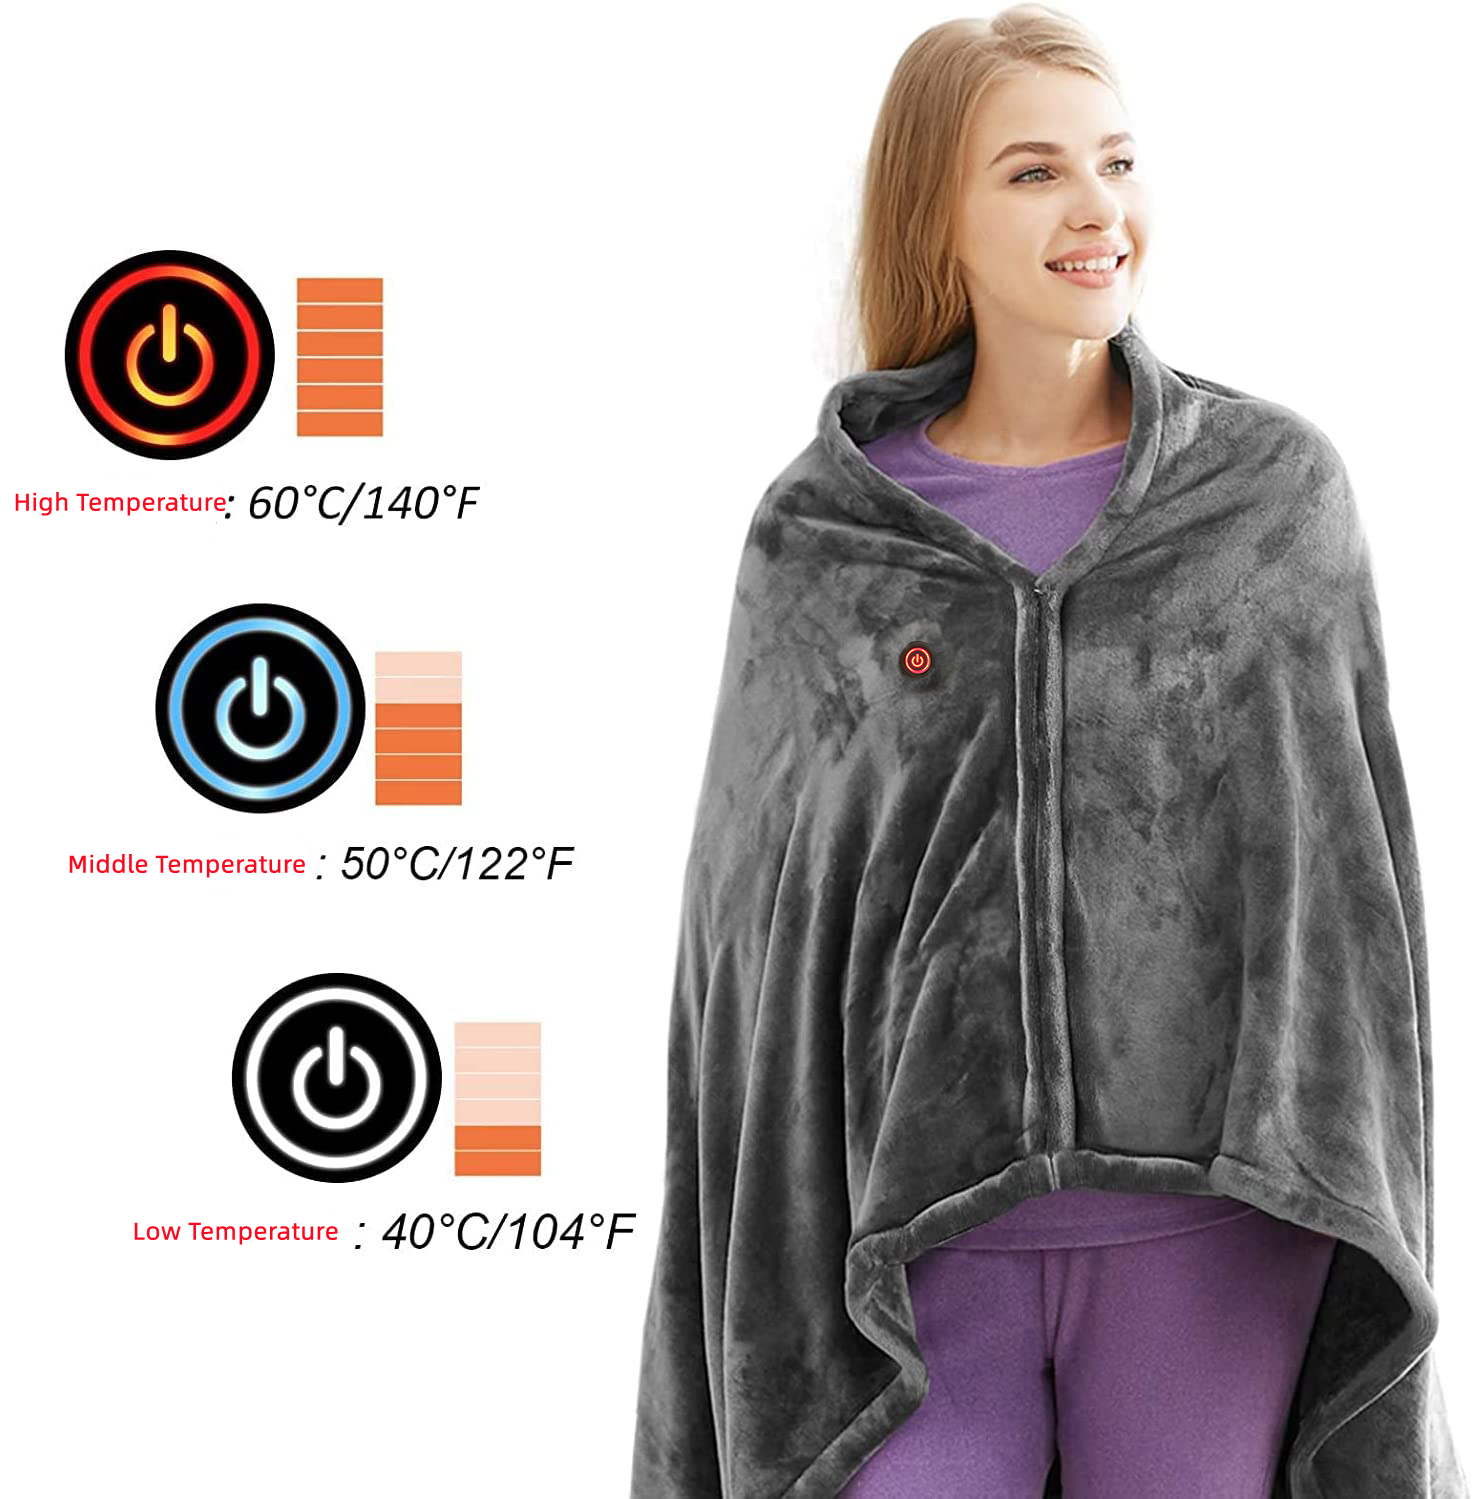 Elektrická deka vyhřívací - ideální přikrývka pro Vás